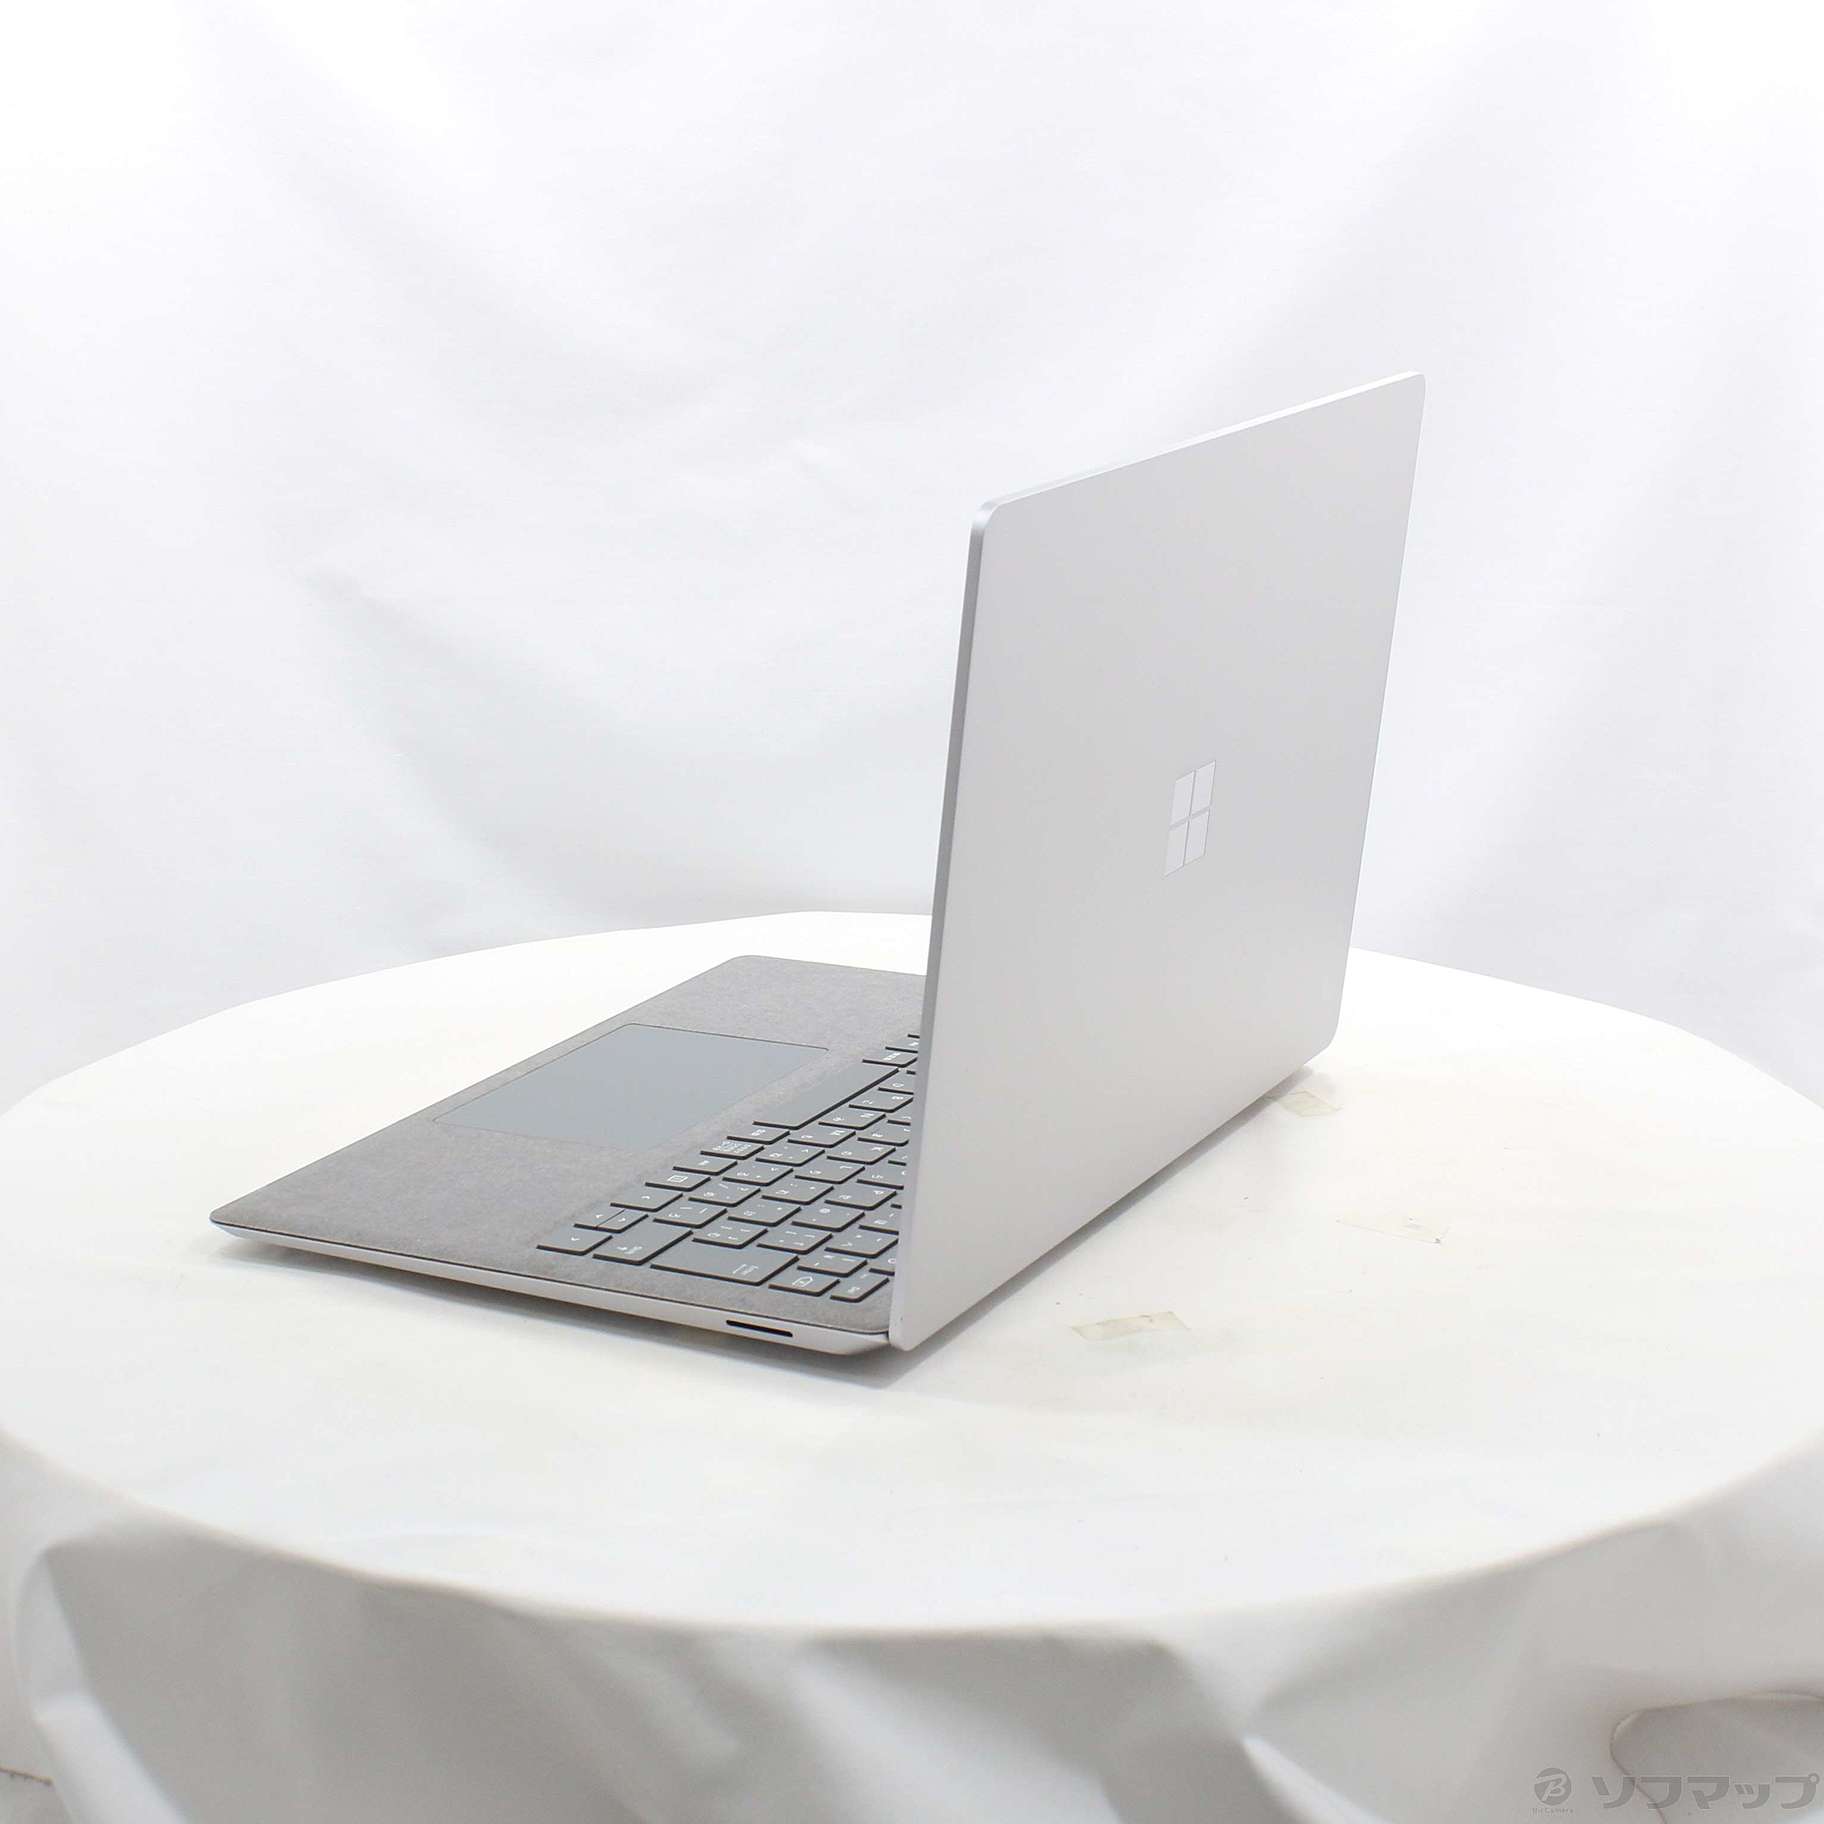 PC/タブレットマイクロソフト Surface Laptop 4 プラチナ 5PB-00020